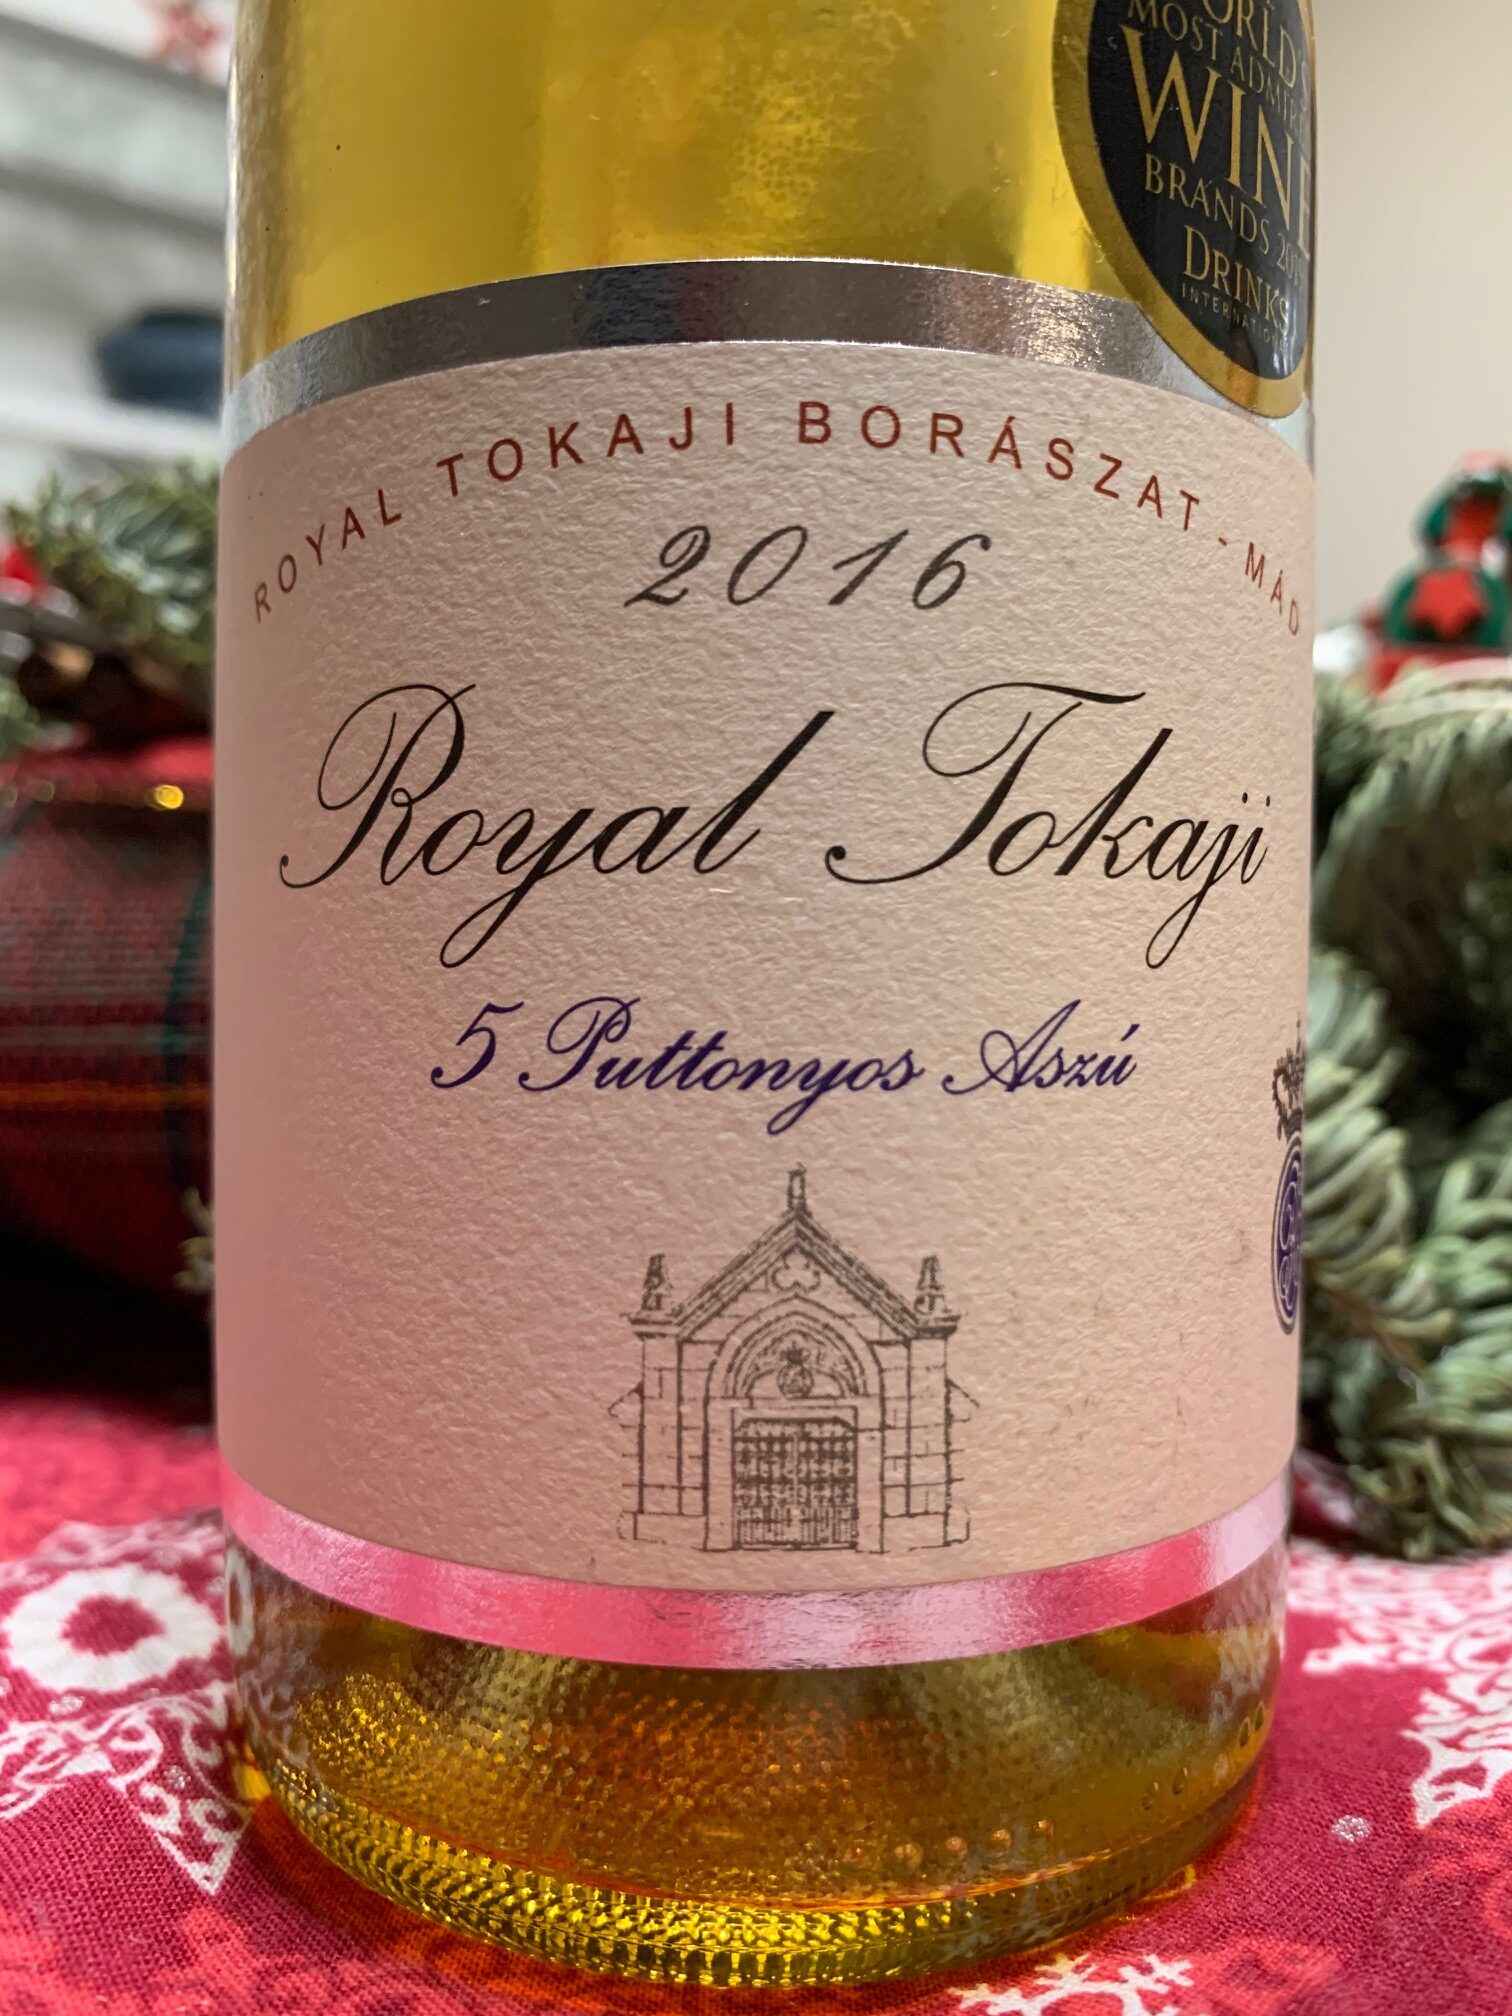 [Obrazek: Blog-o-winie-Royal-Tokaj-5-p-2016-rotated.jpg]